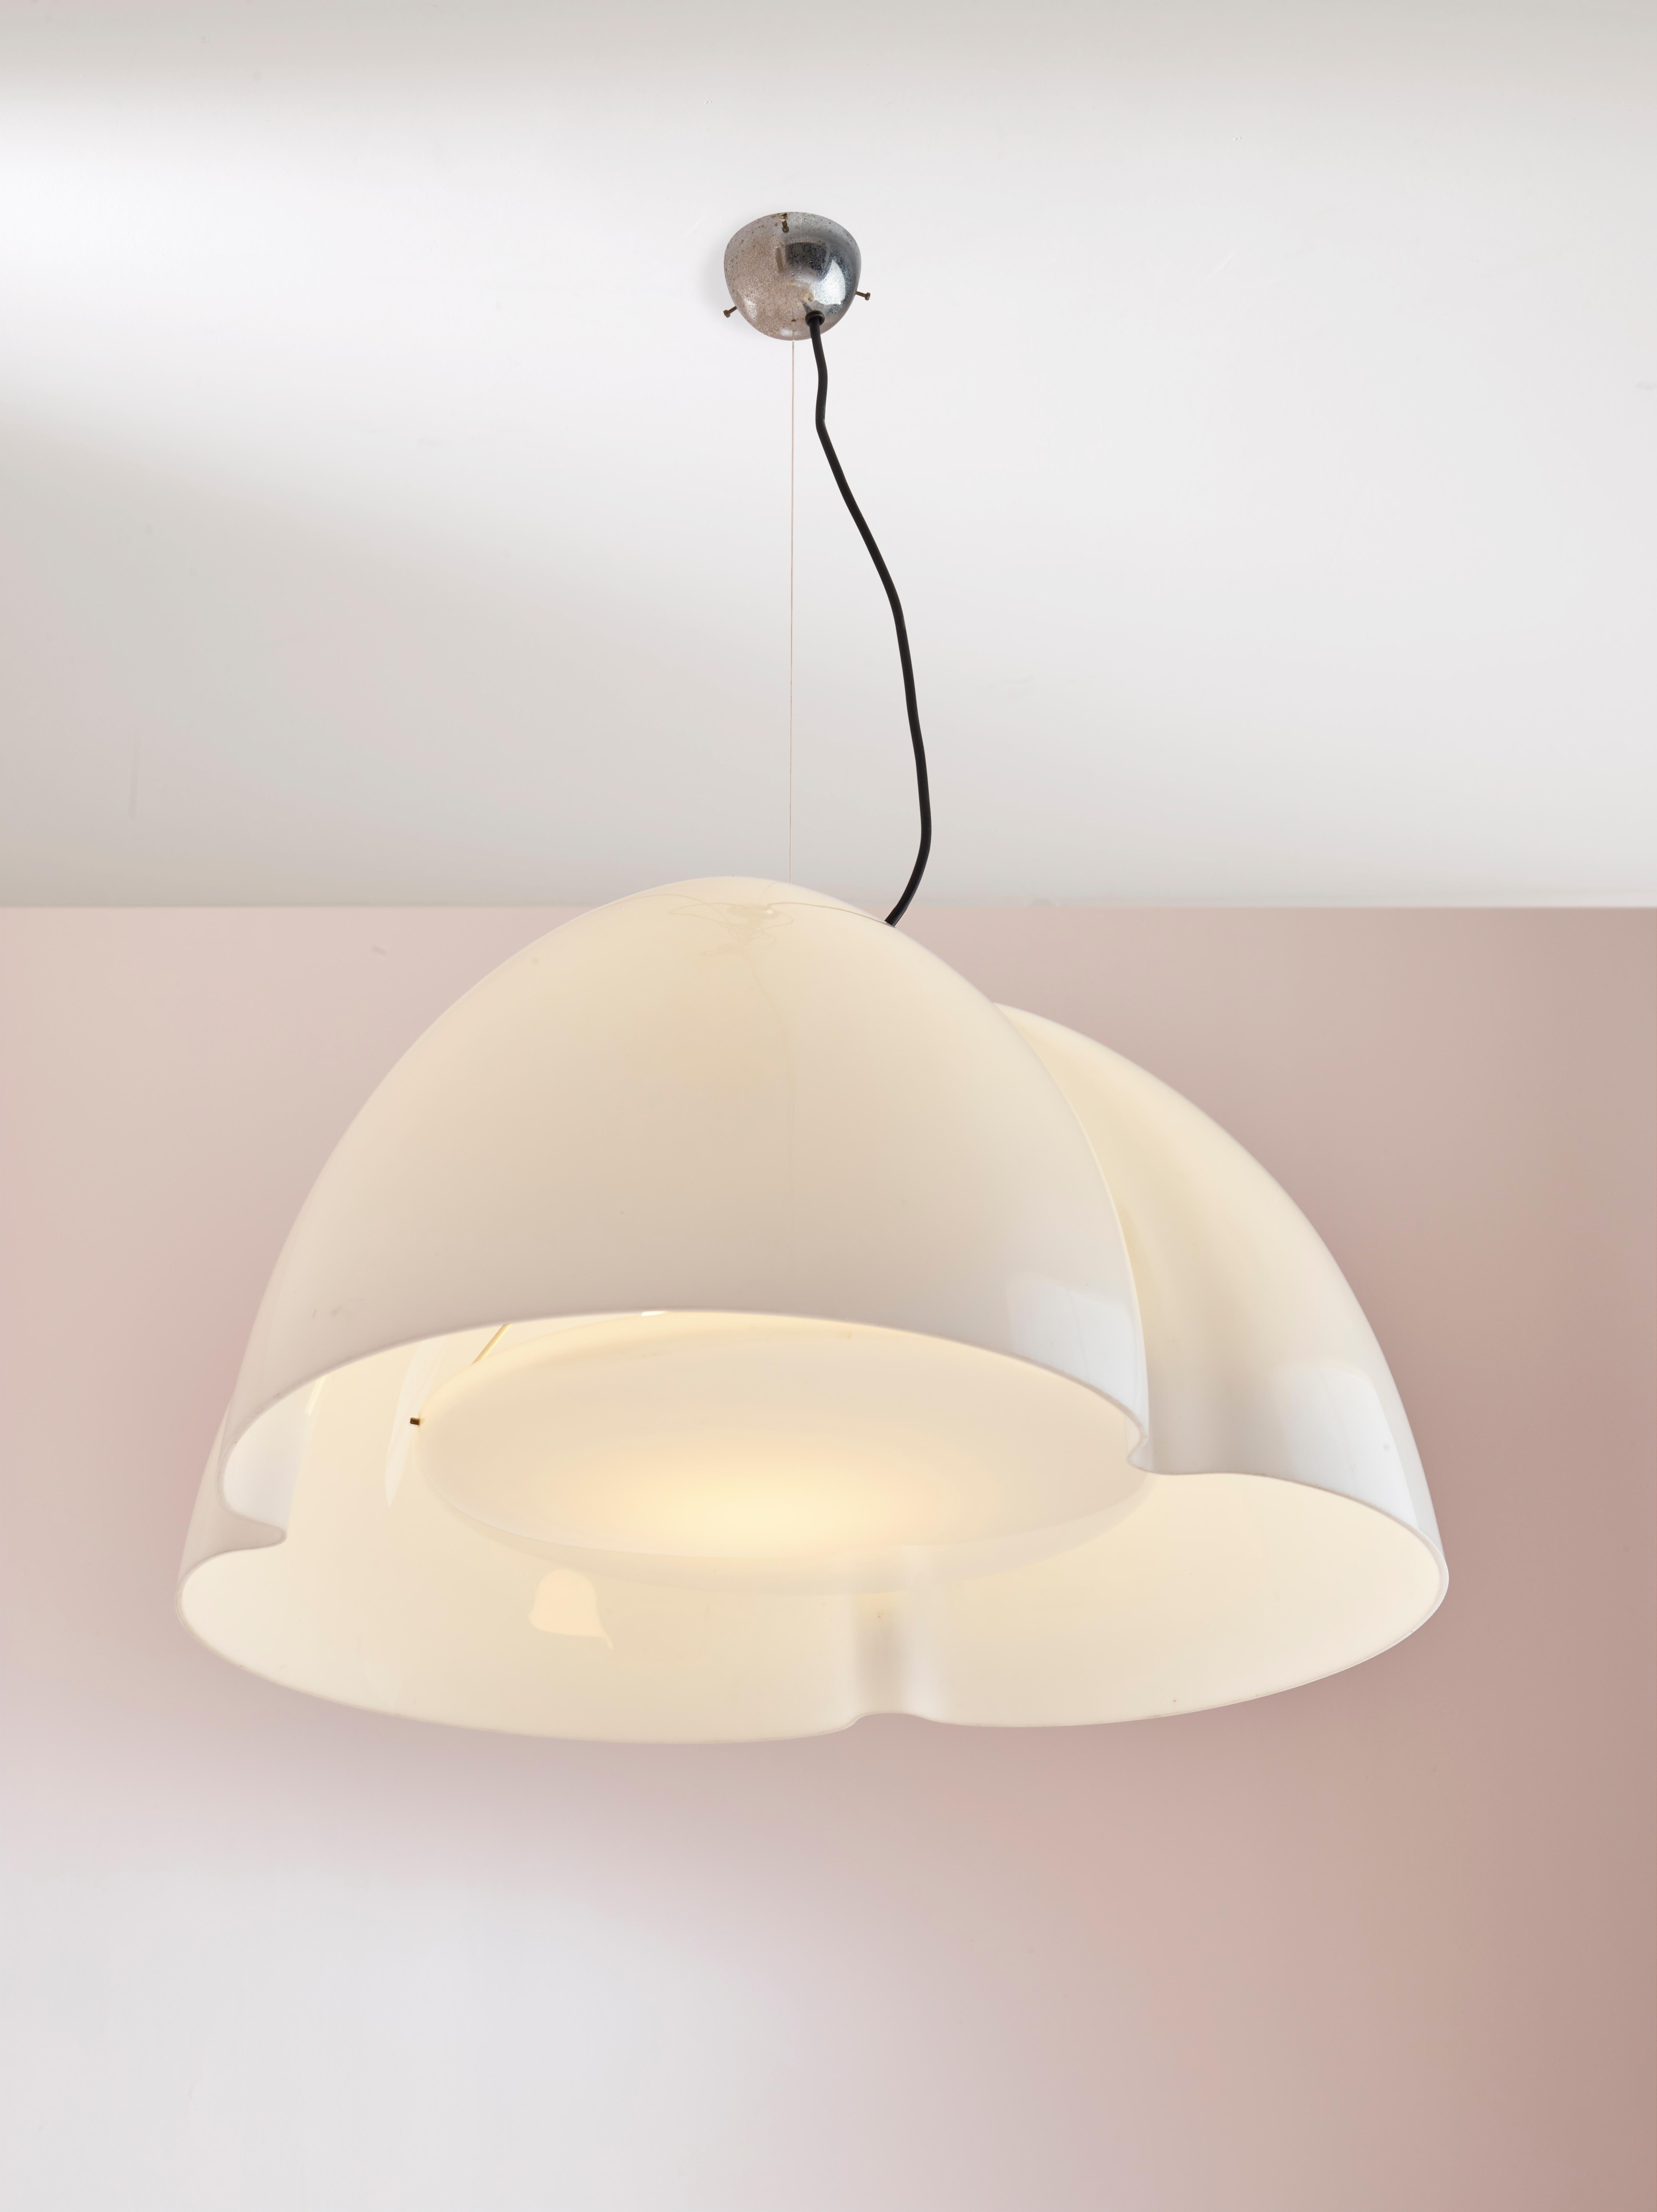 Ingo Maurer Tricena perspex pendant light for for Design M, 1968 In Good Condition For Sale In Chiavari, Liguria